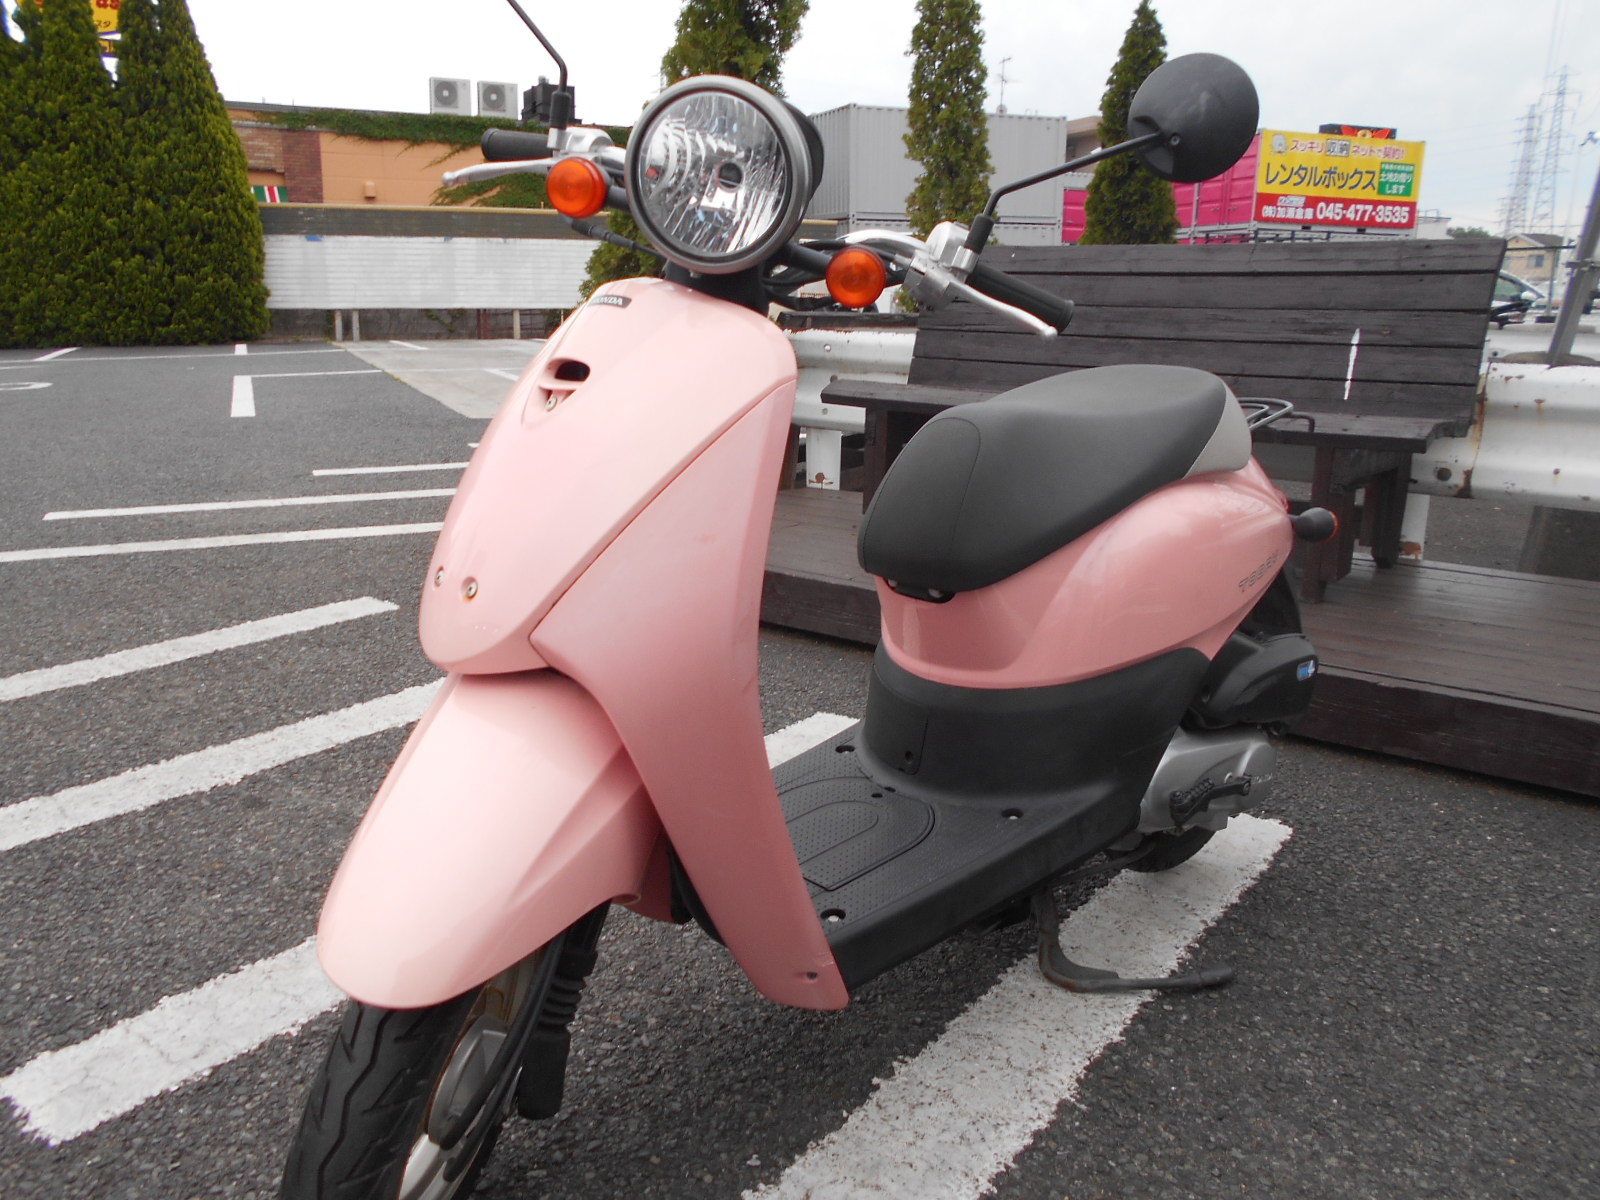 ピンクな原付 最新情報 U Media ユーメディア 中古バイク 新車バイク探しの決定版 神奈川 東京でバイク 探すならユーメディア